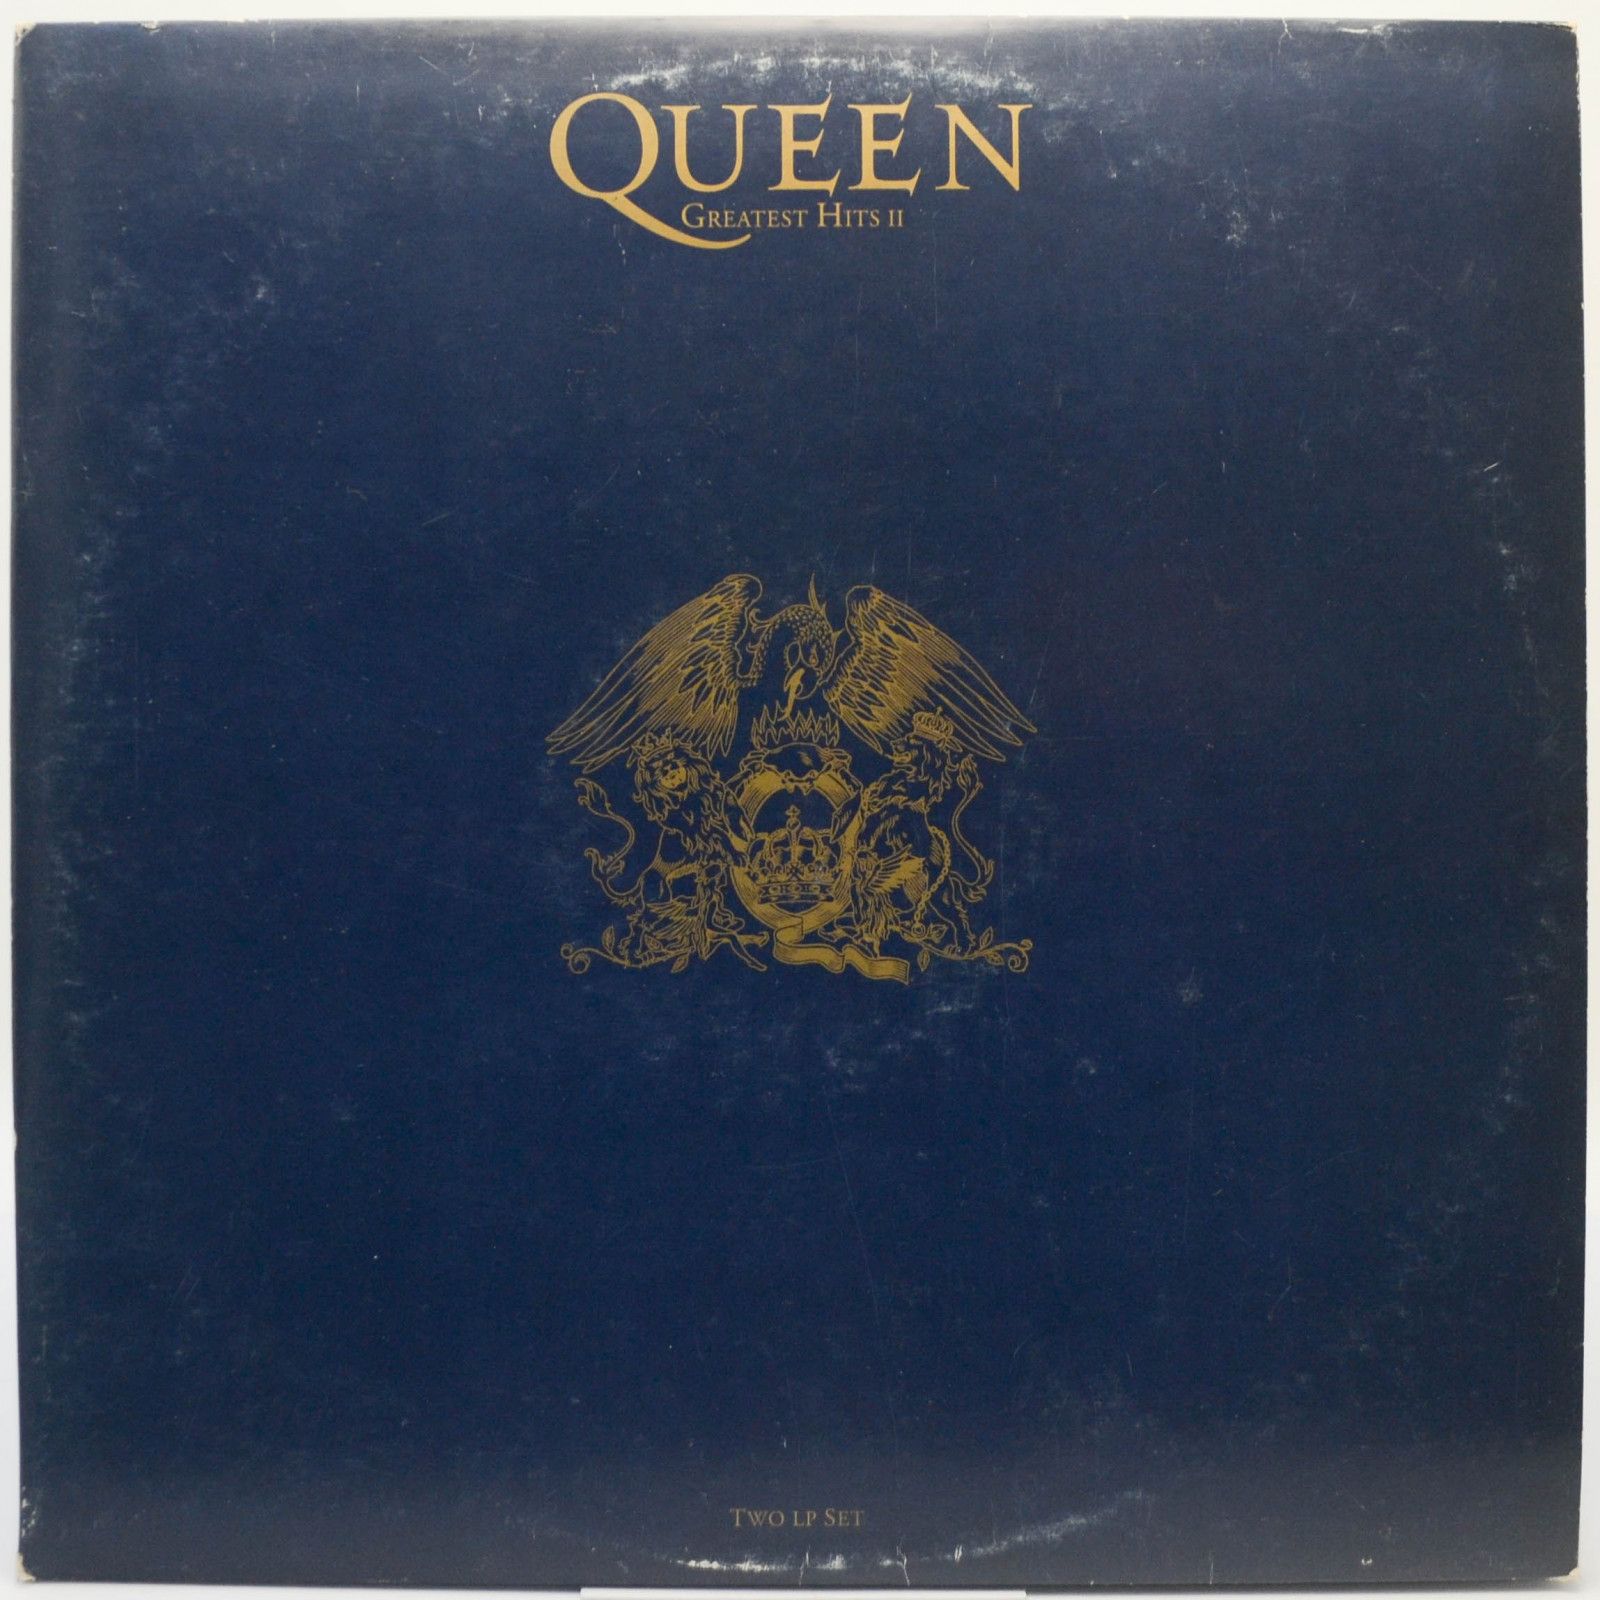 Queen — Greatest Hits II (2LP), 1991